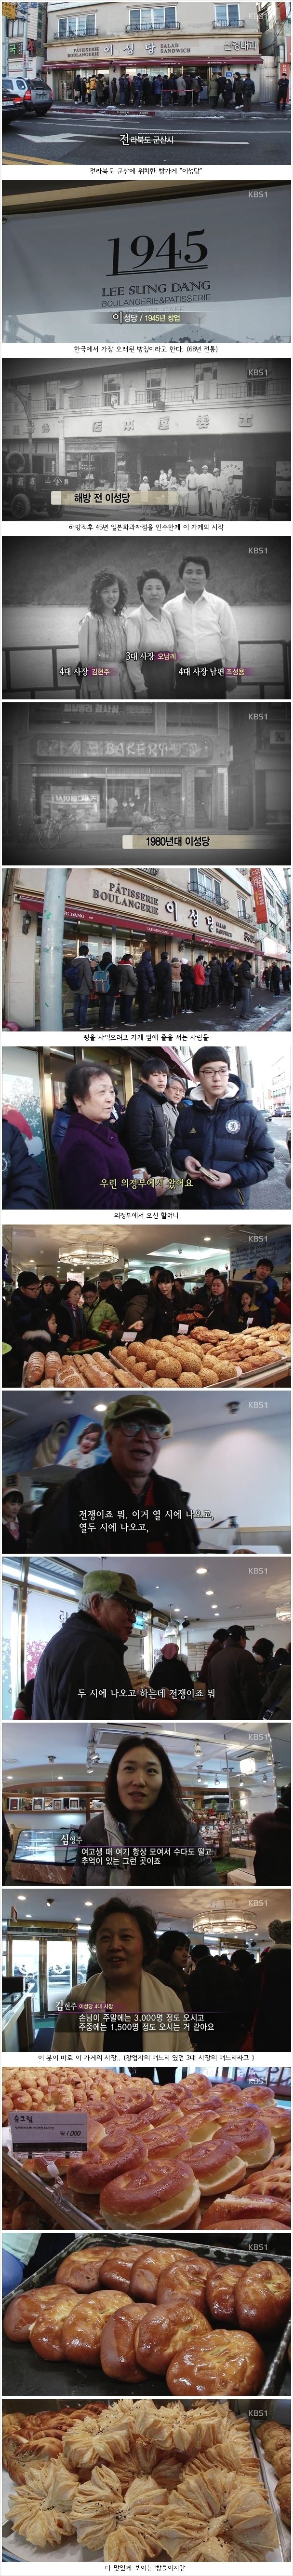 2809bb8d20825e6cc9602ea0152ef4e1_goNTYSZwUiB3smk6WeMeMXEGu7gWwYa3.jpg : 대한민국에서 가장 오래된 빵집